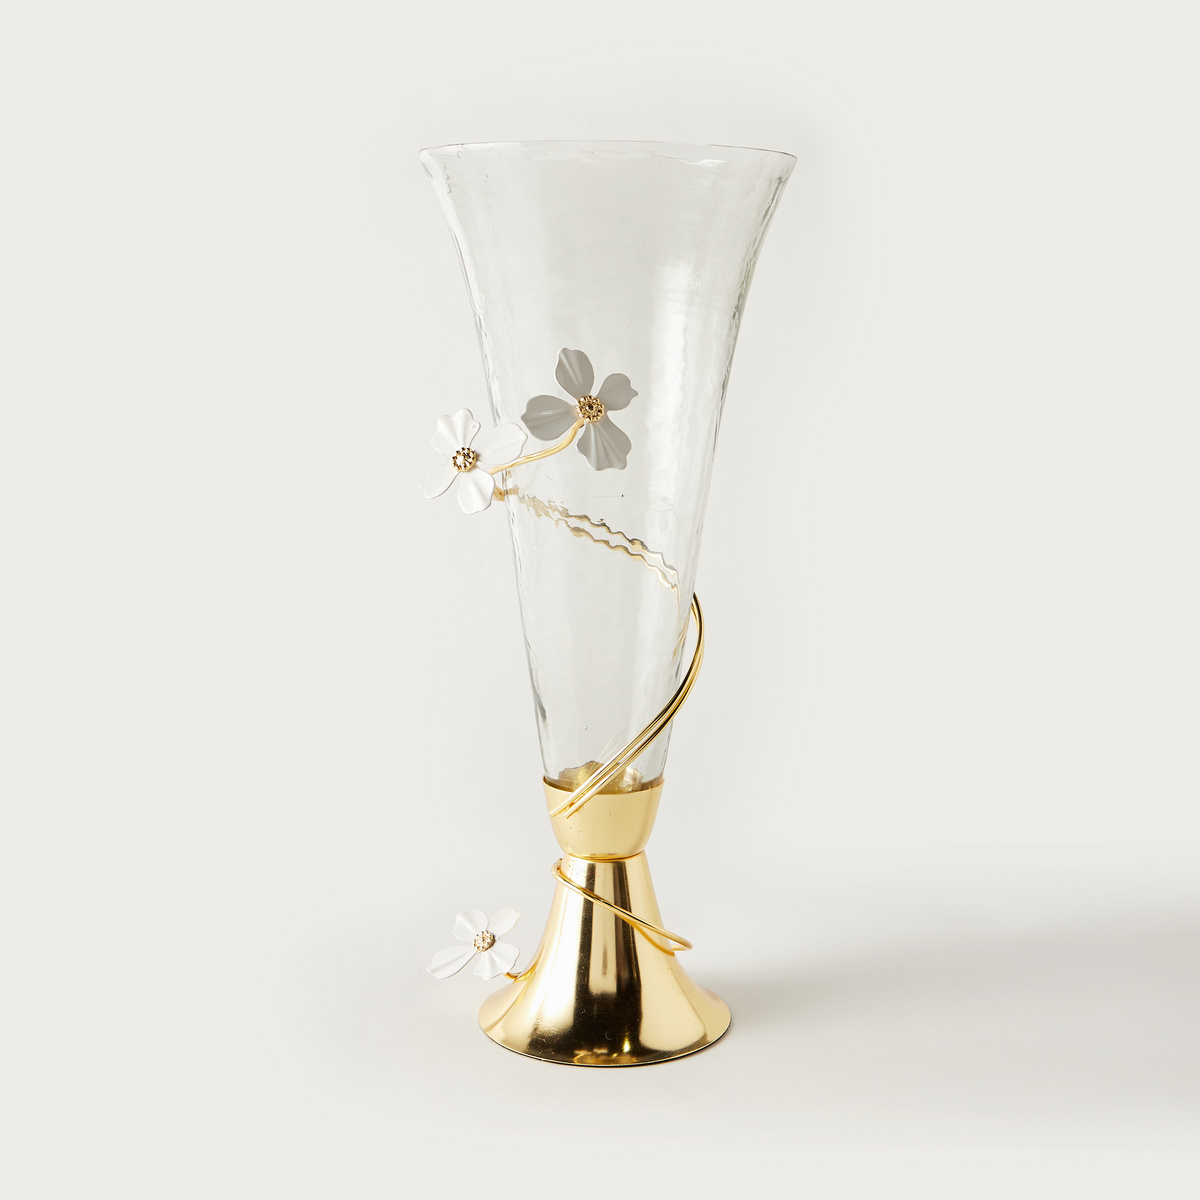 مزهرية زجاجية ديكور بشكل مخروطي وزخارف زهور - 17x20x40 سم